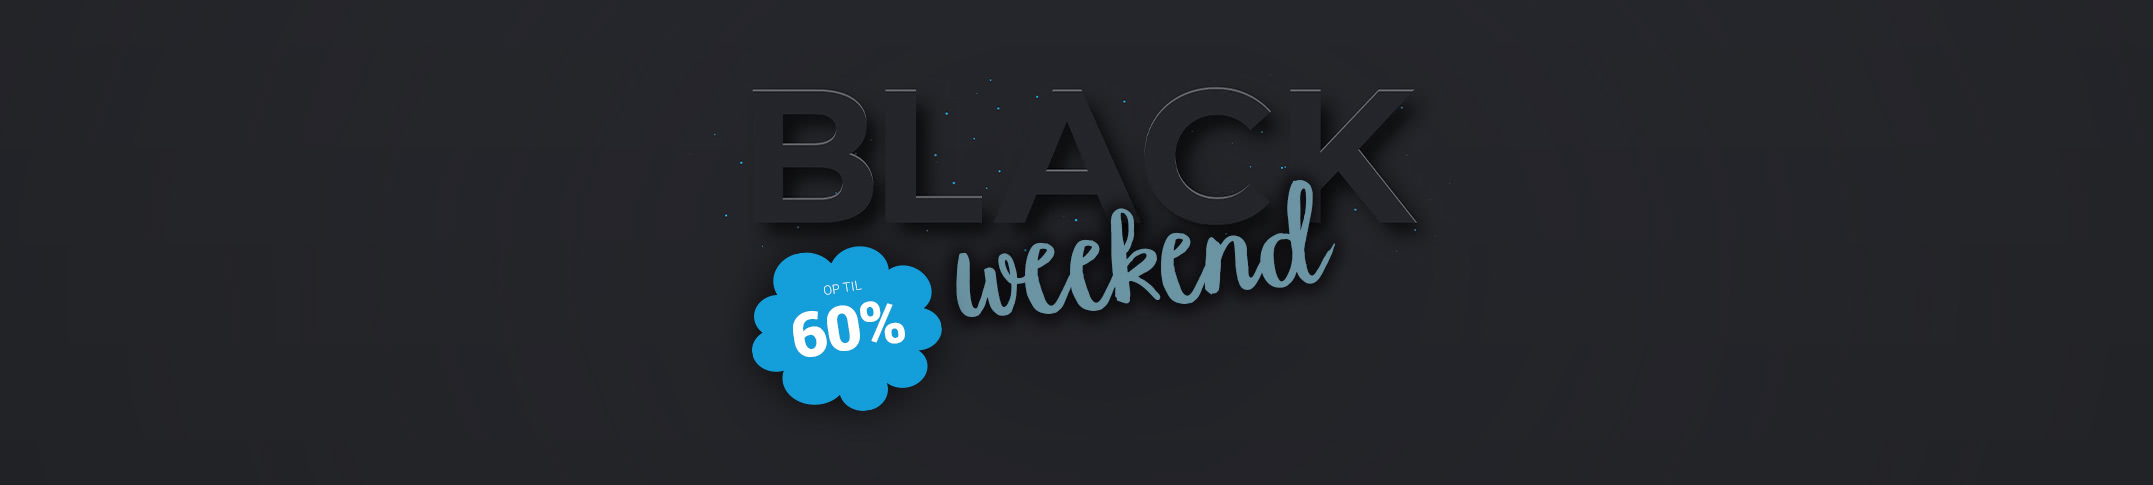 Black Weekend - op til 60%* hele weekenden!